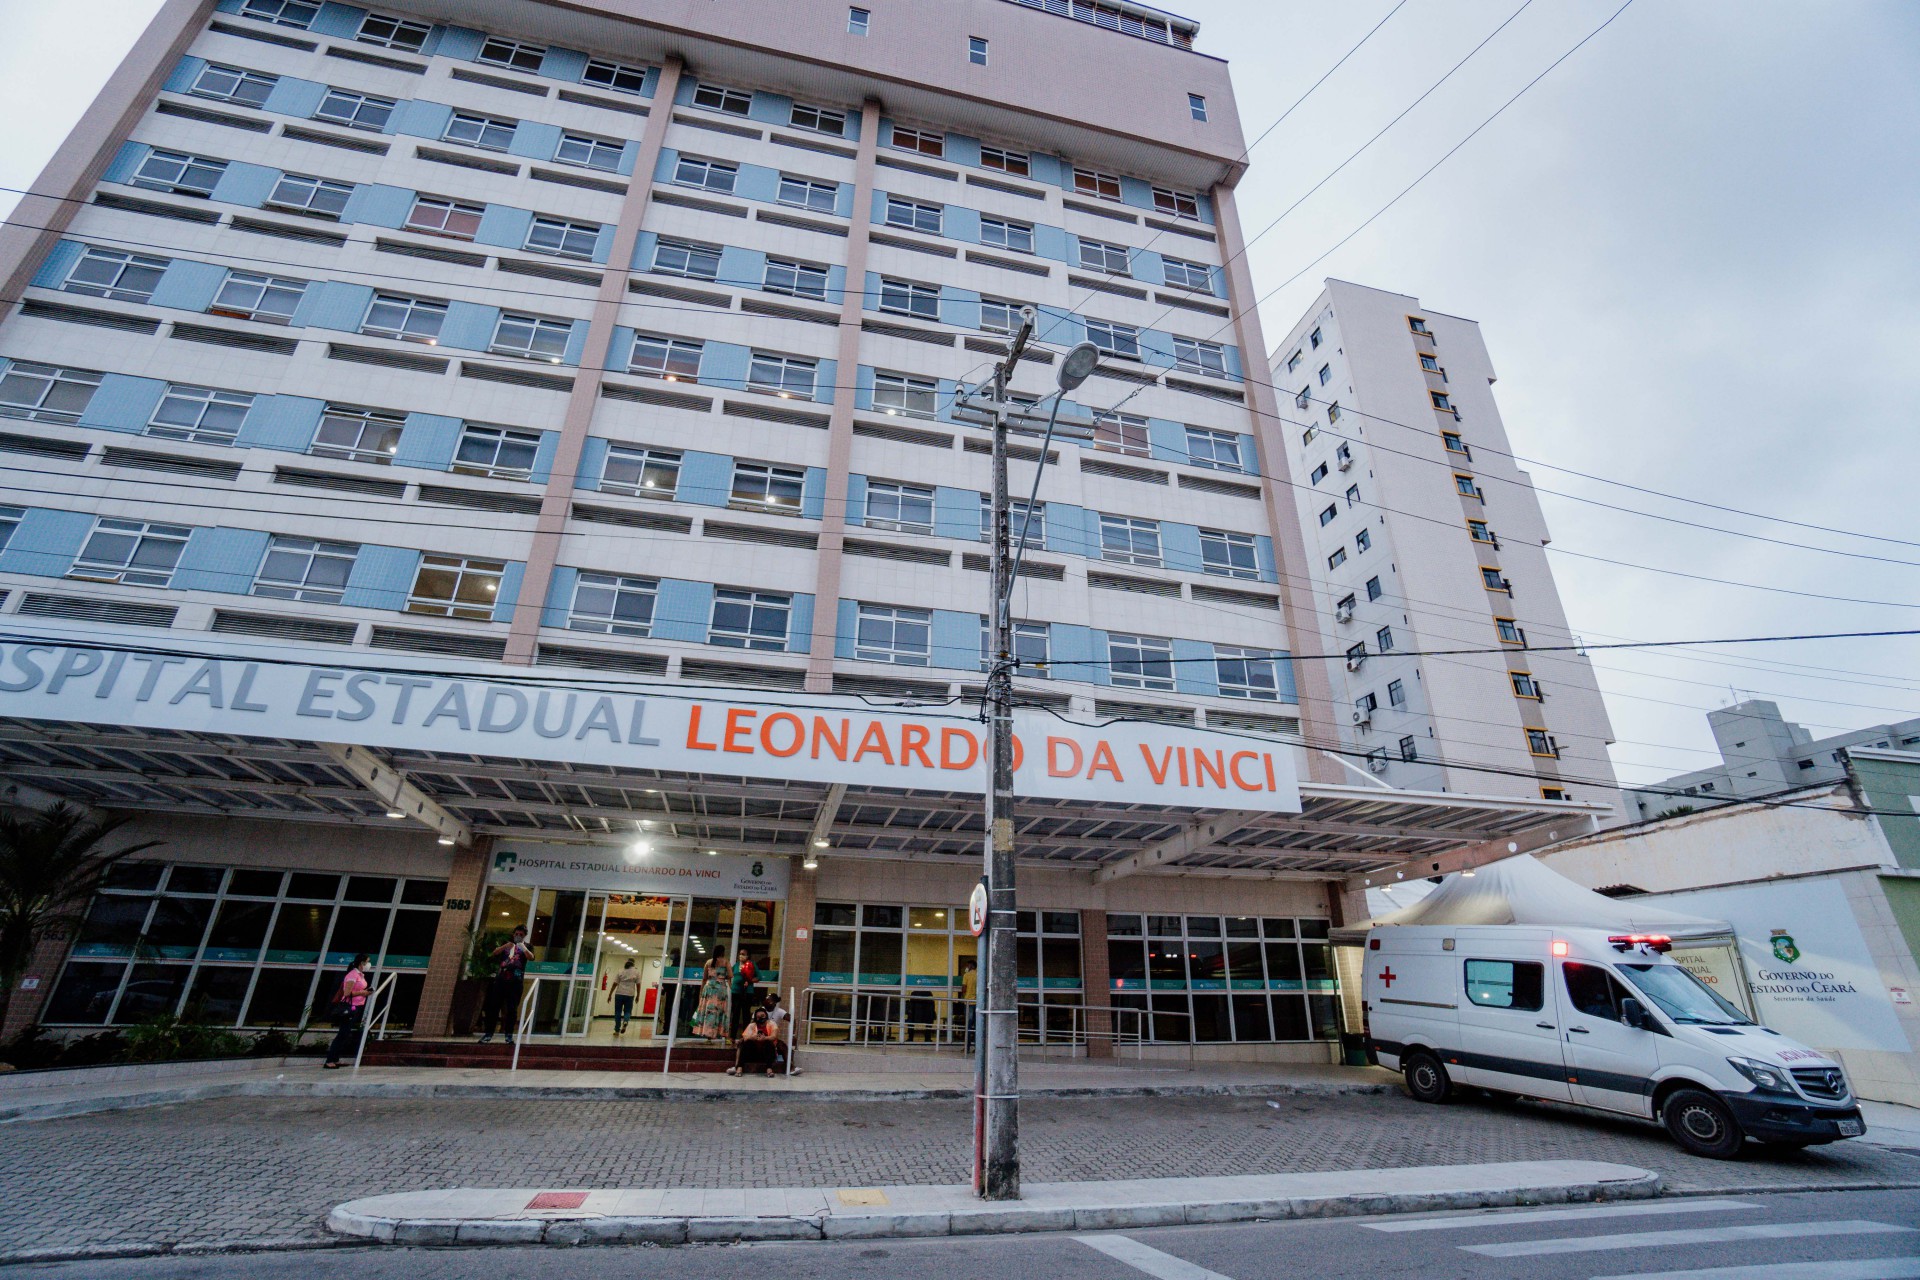 Sindisaúde aponta suposto caso de assédio por uma coordenadora de Enfermagem no Hospital Estadual Leonardo da Vinci (HELV), em Fortaleza (Foto: JÚLIO CAESAR)